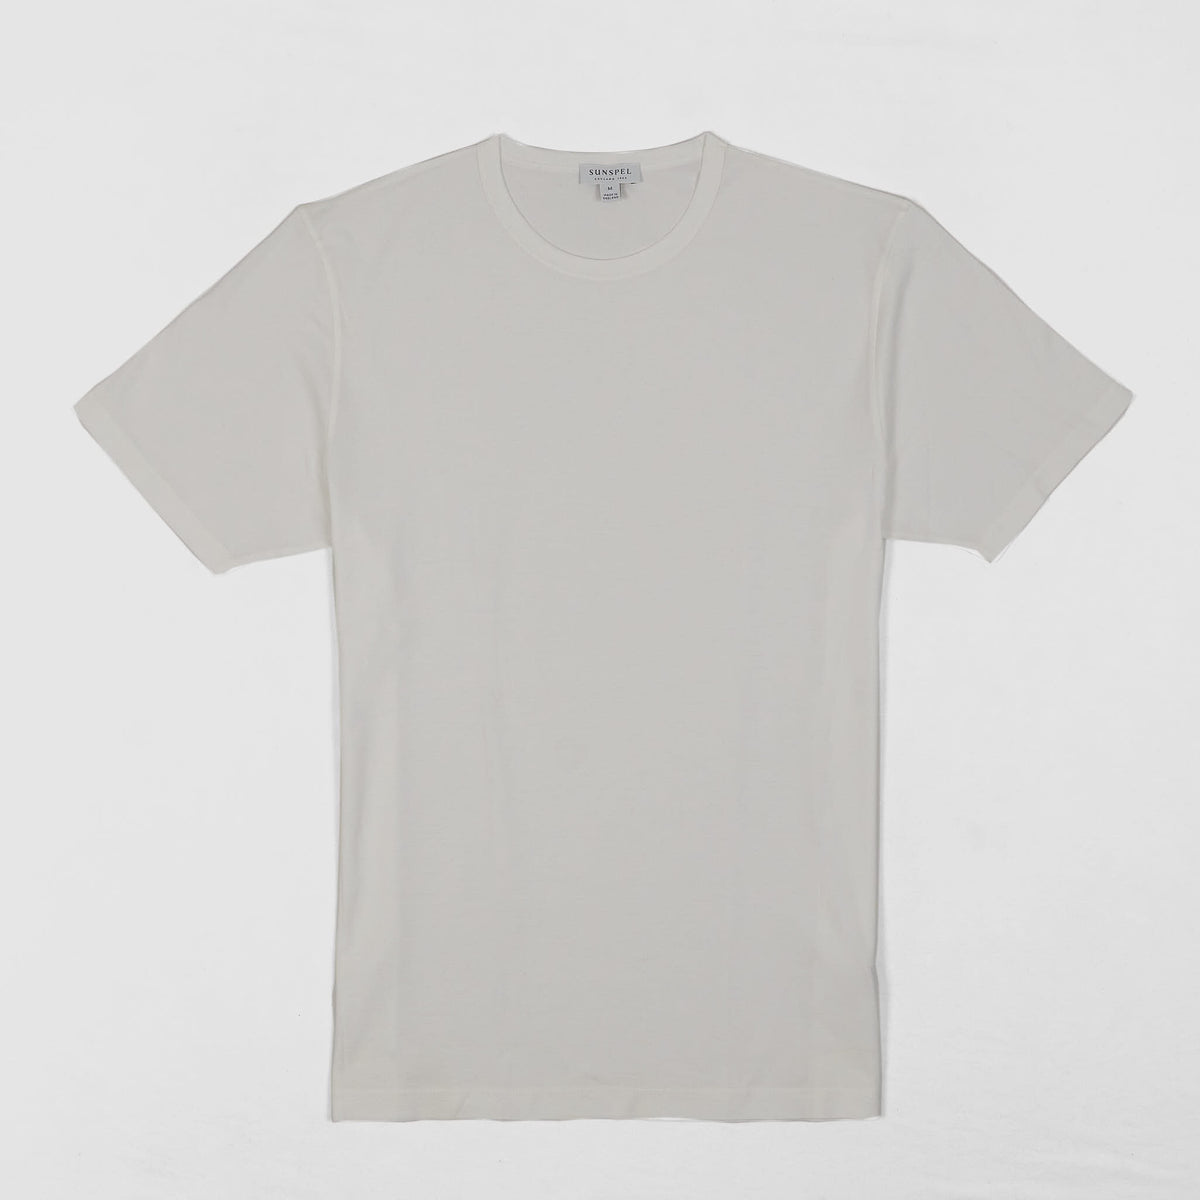 Sunspel Short Sleeve Crew Neck T-Shirt